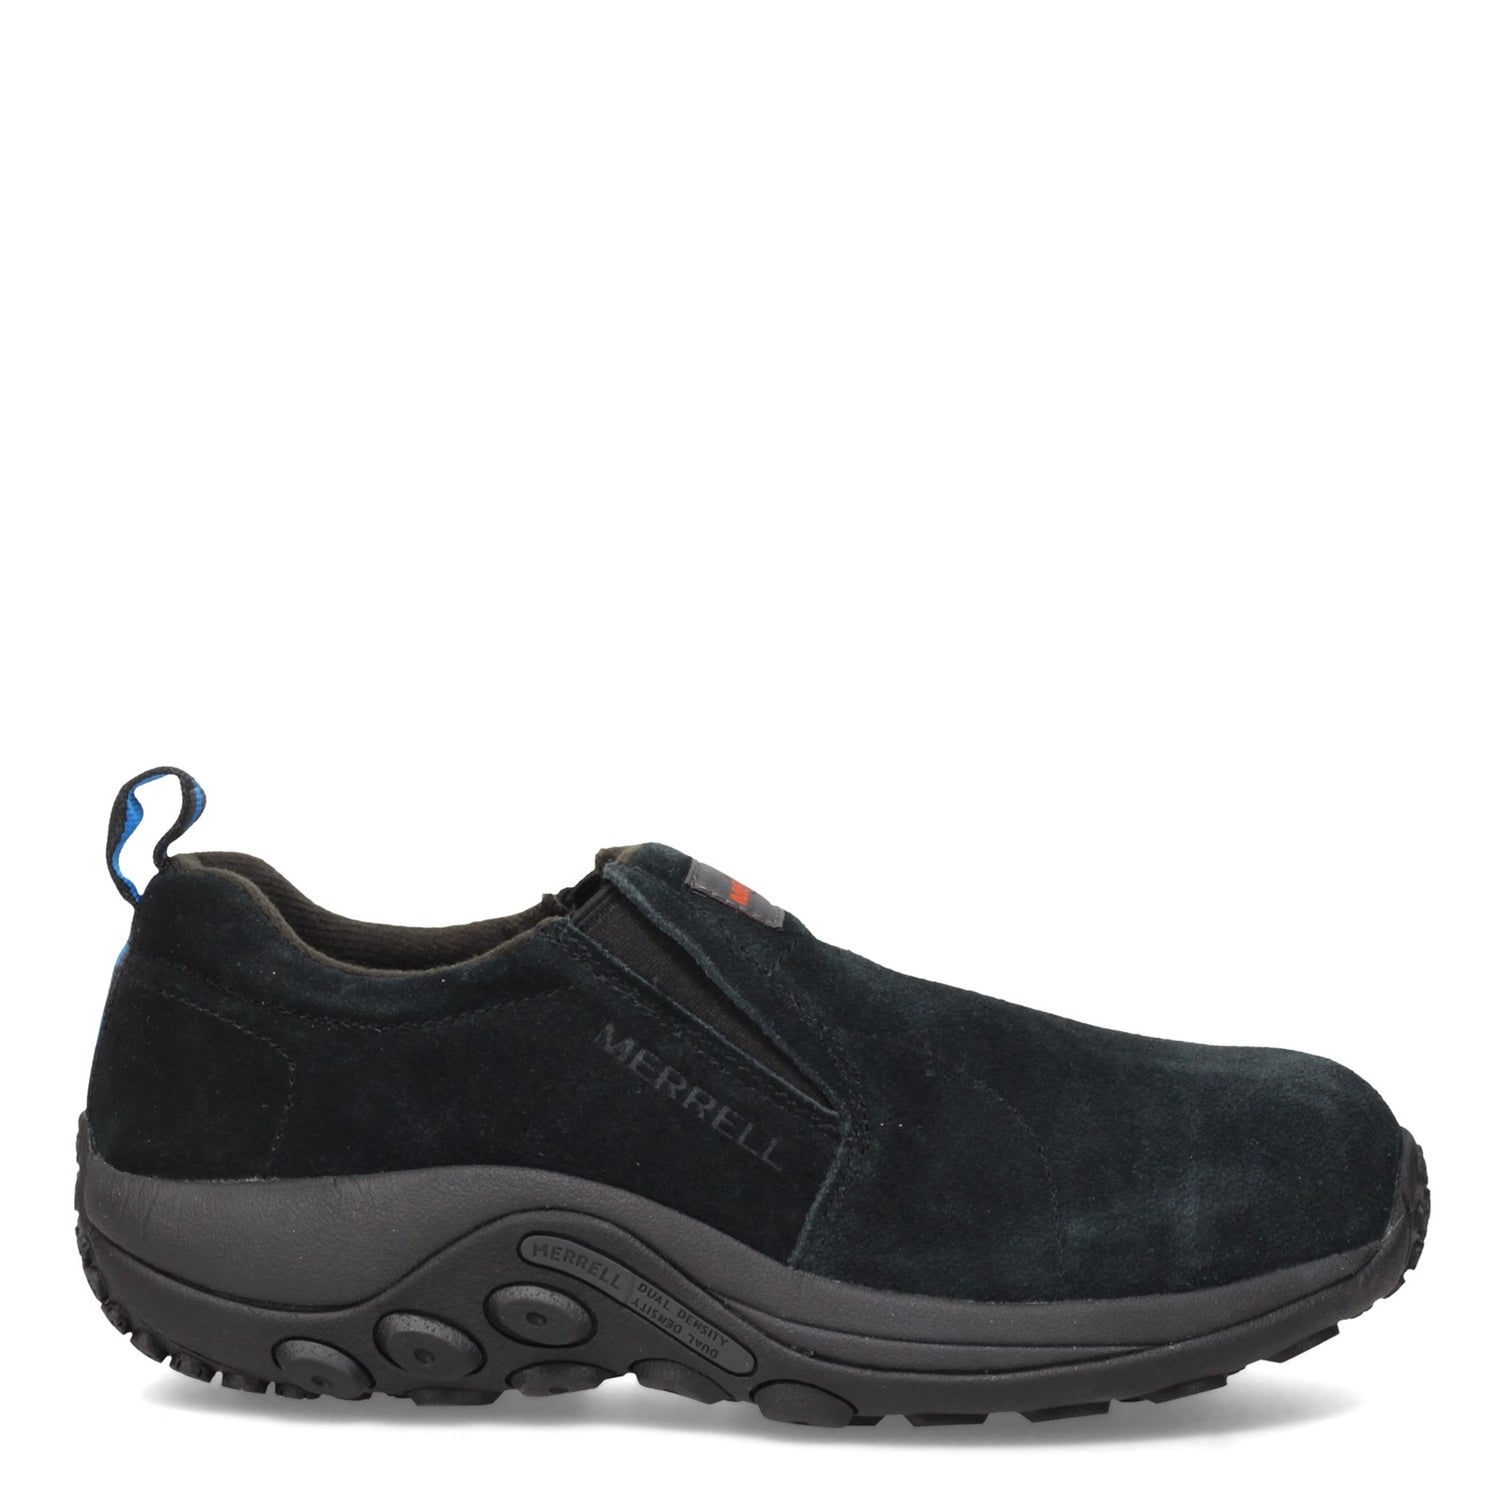 Peltz Shoes  Men's Merrell Jungle Moc Alloy Toe Work Shoe - Wide Width Black J85777W